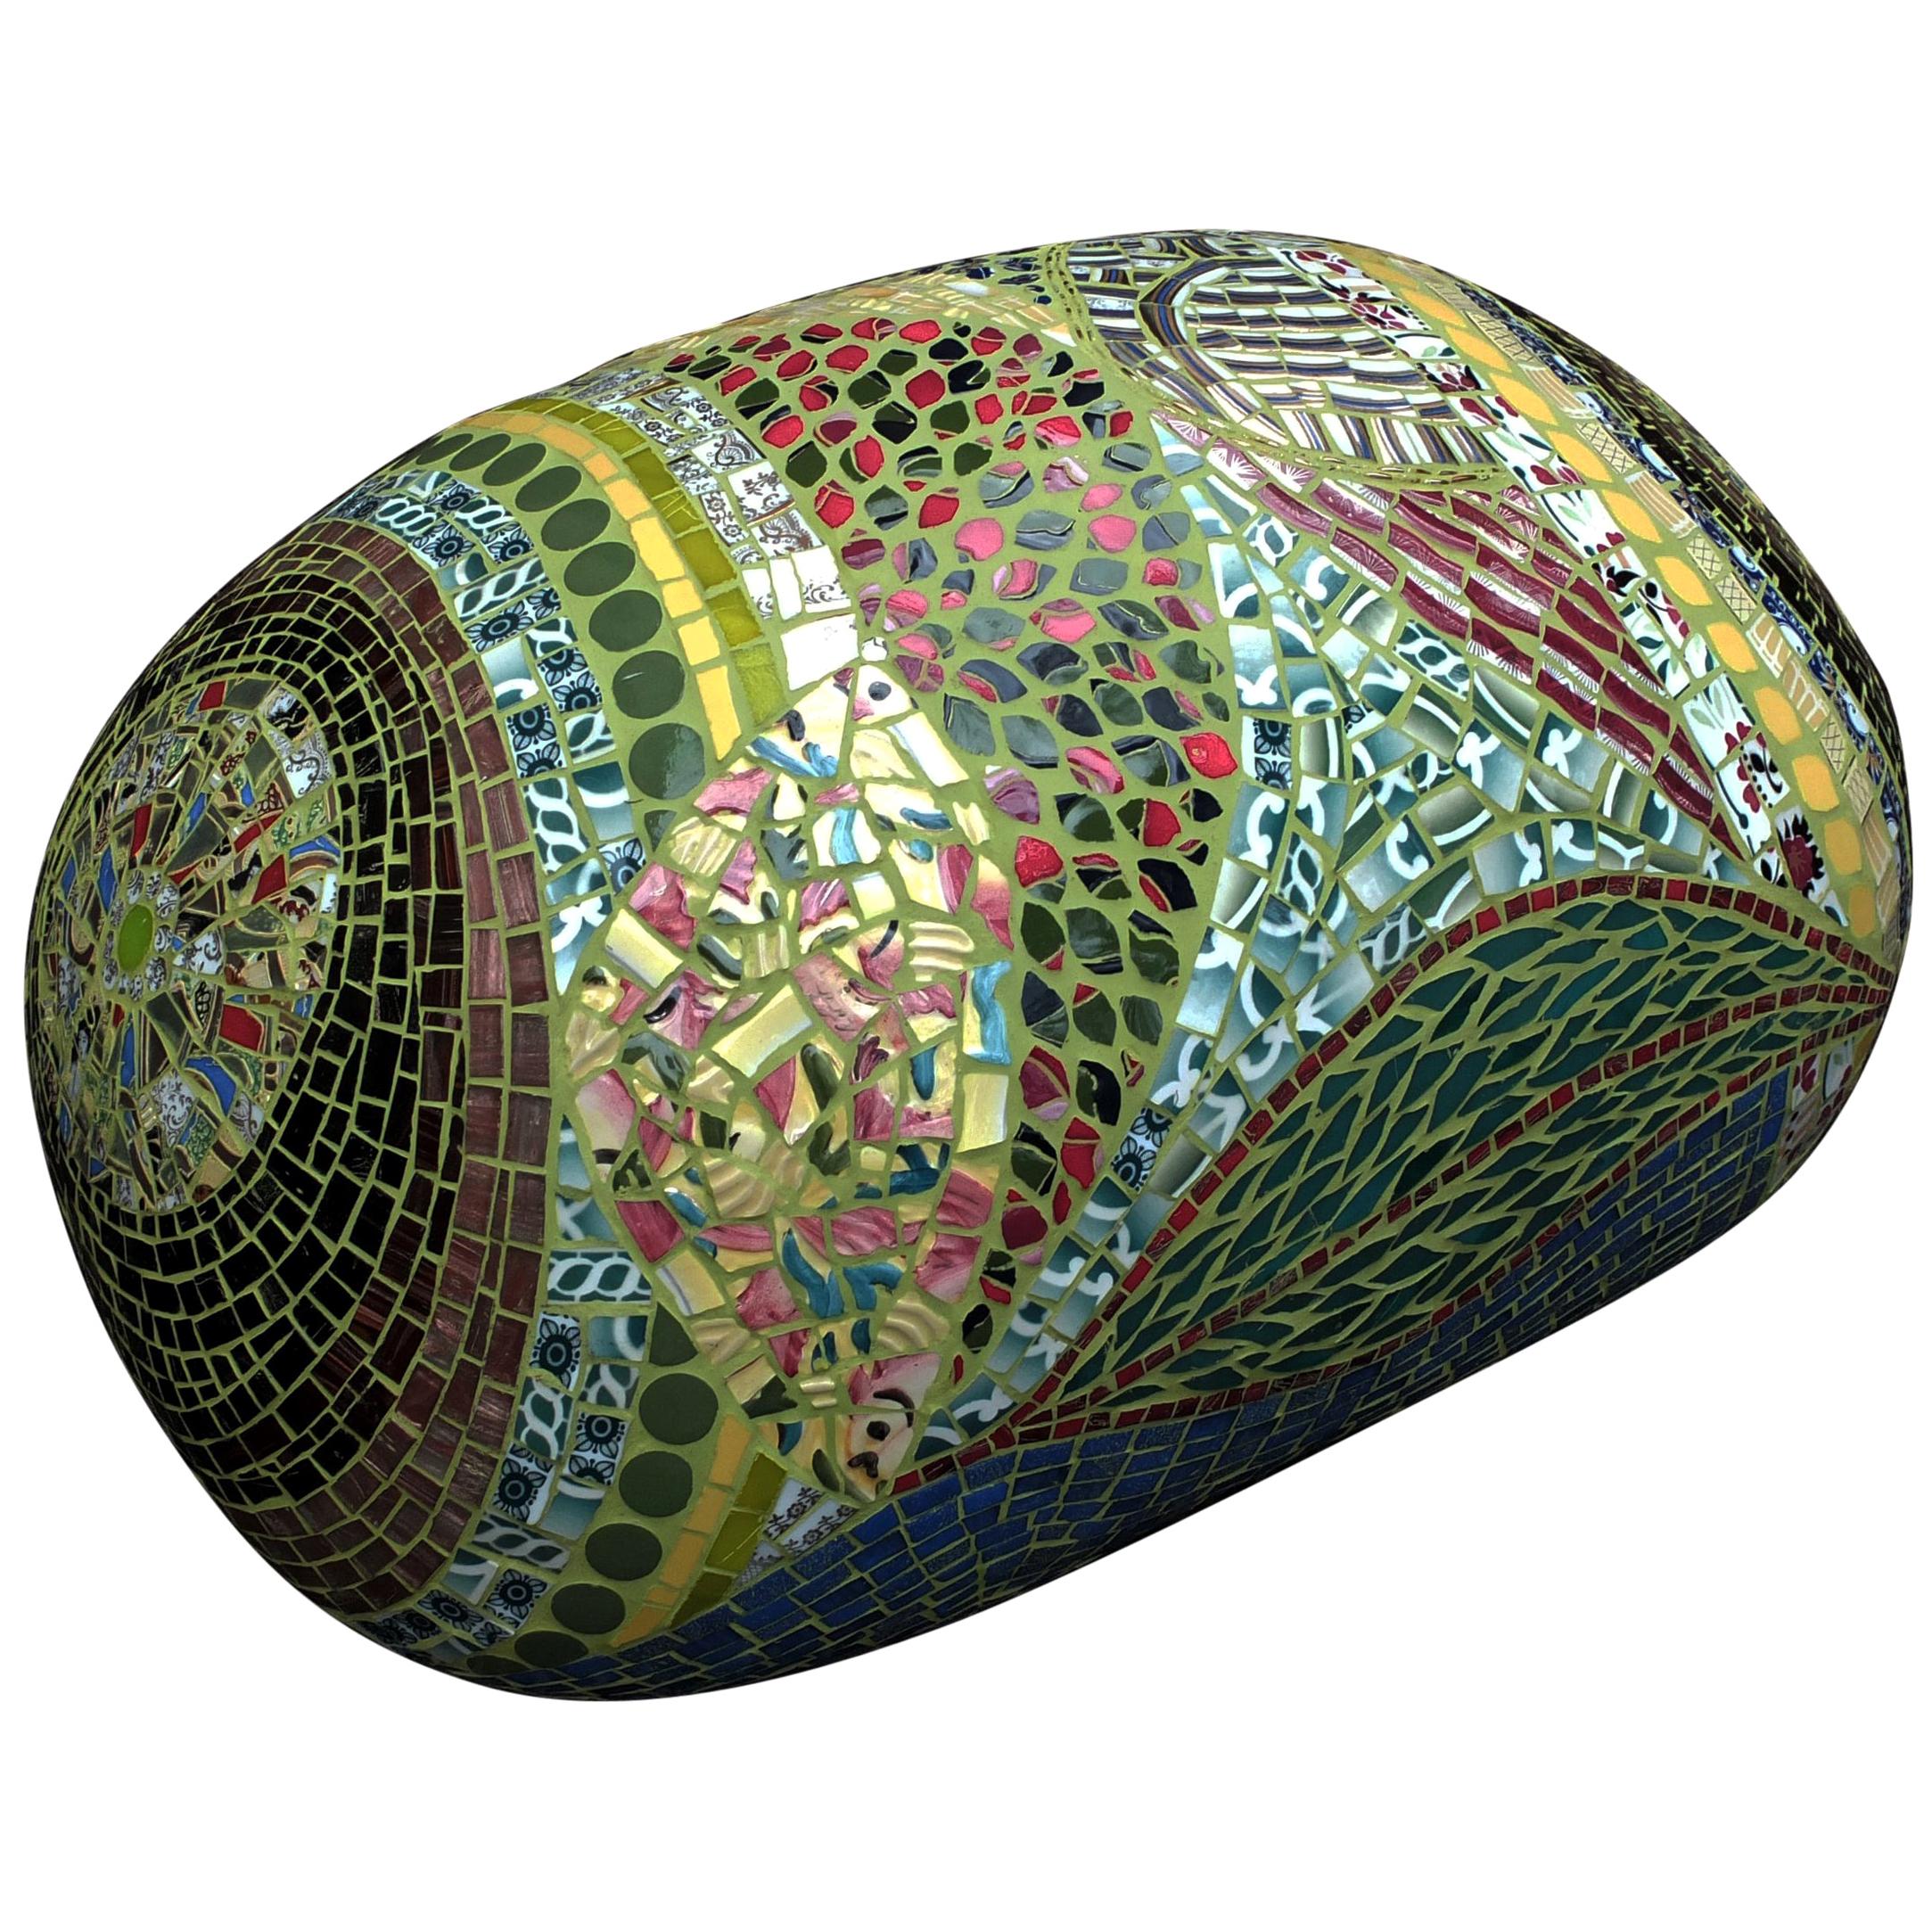 Unique Colorful Mosaic Pouf Ottoman, France